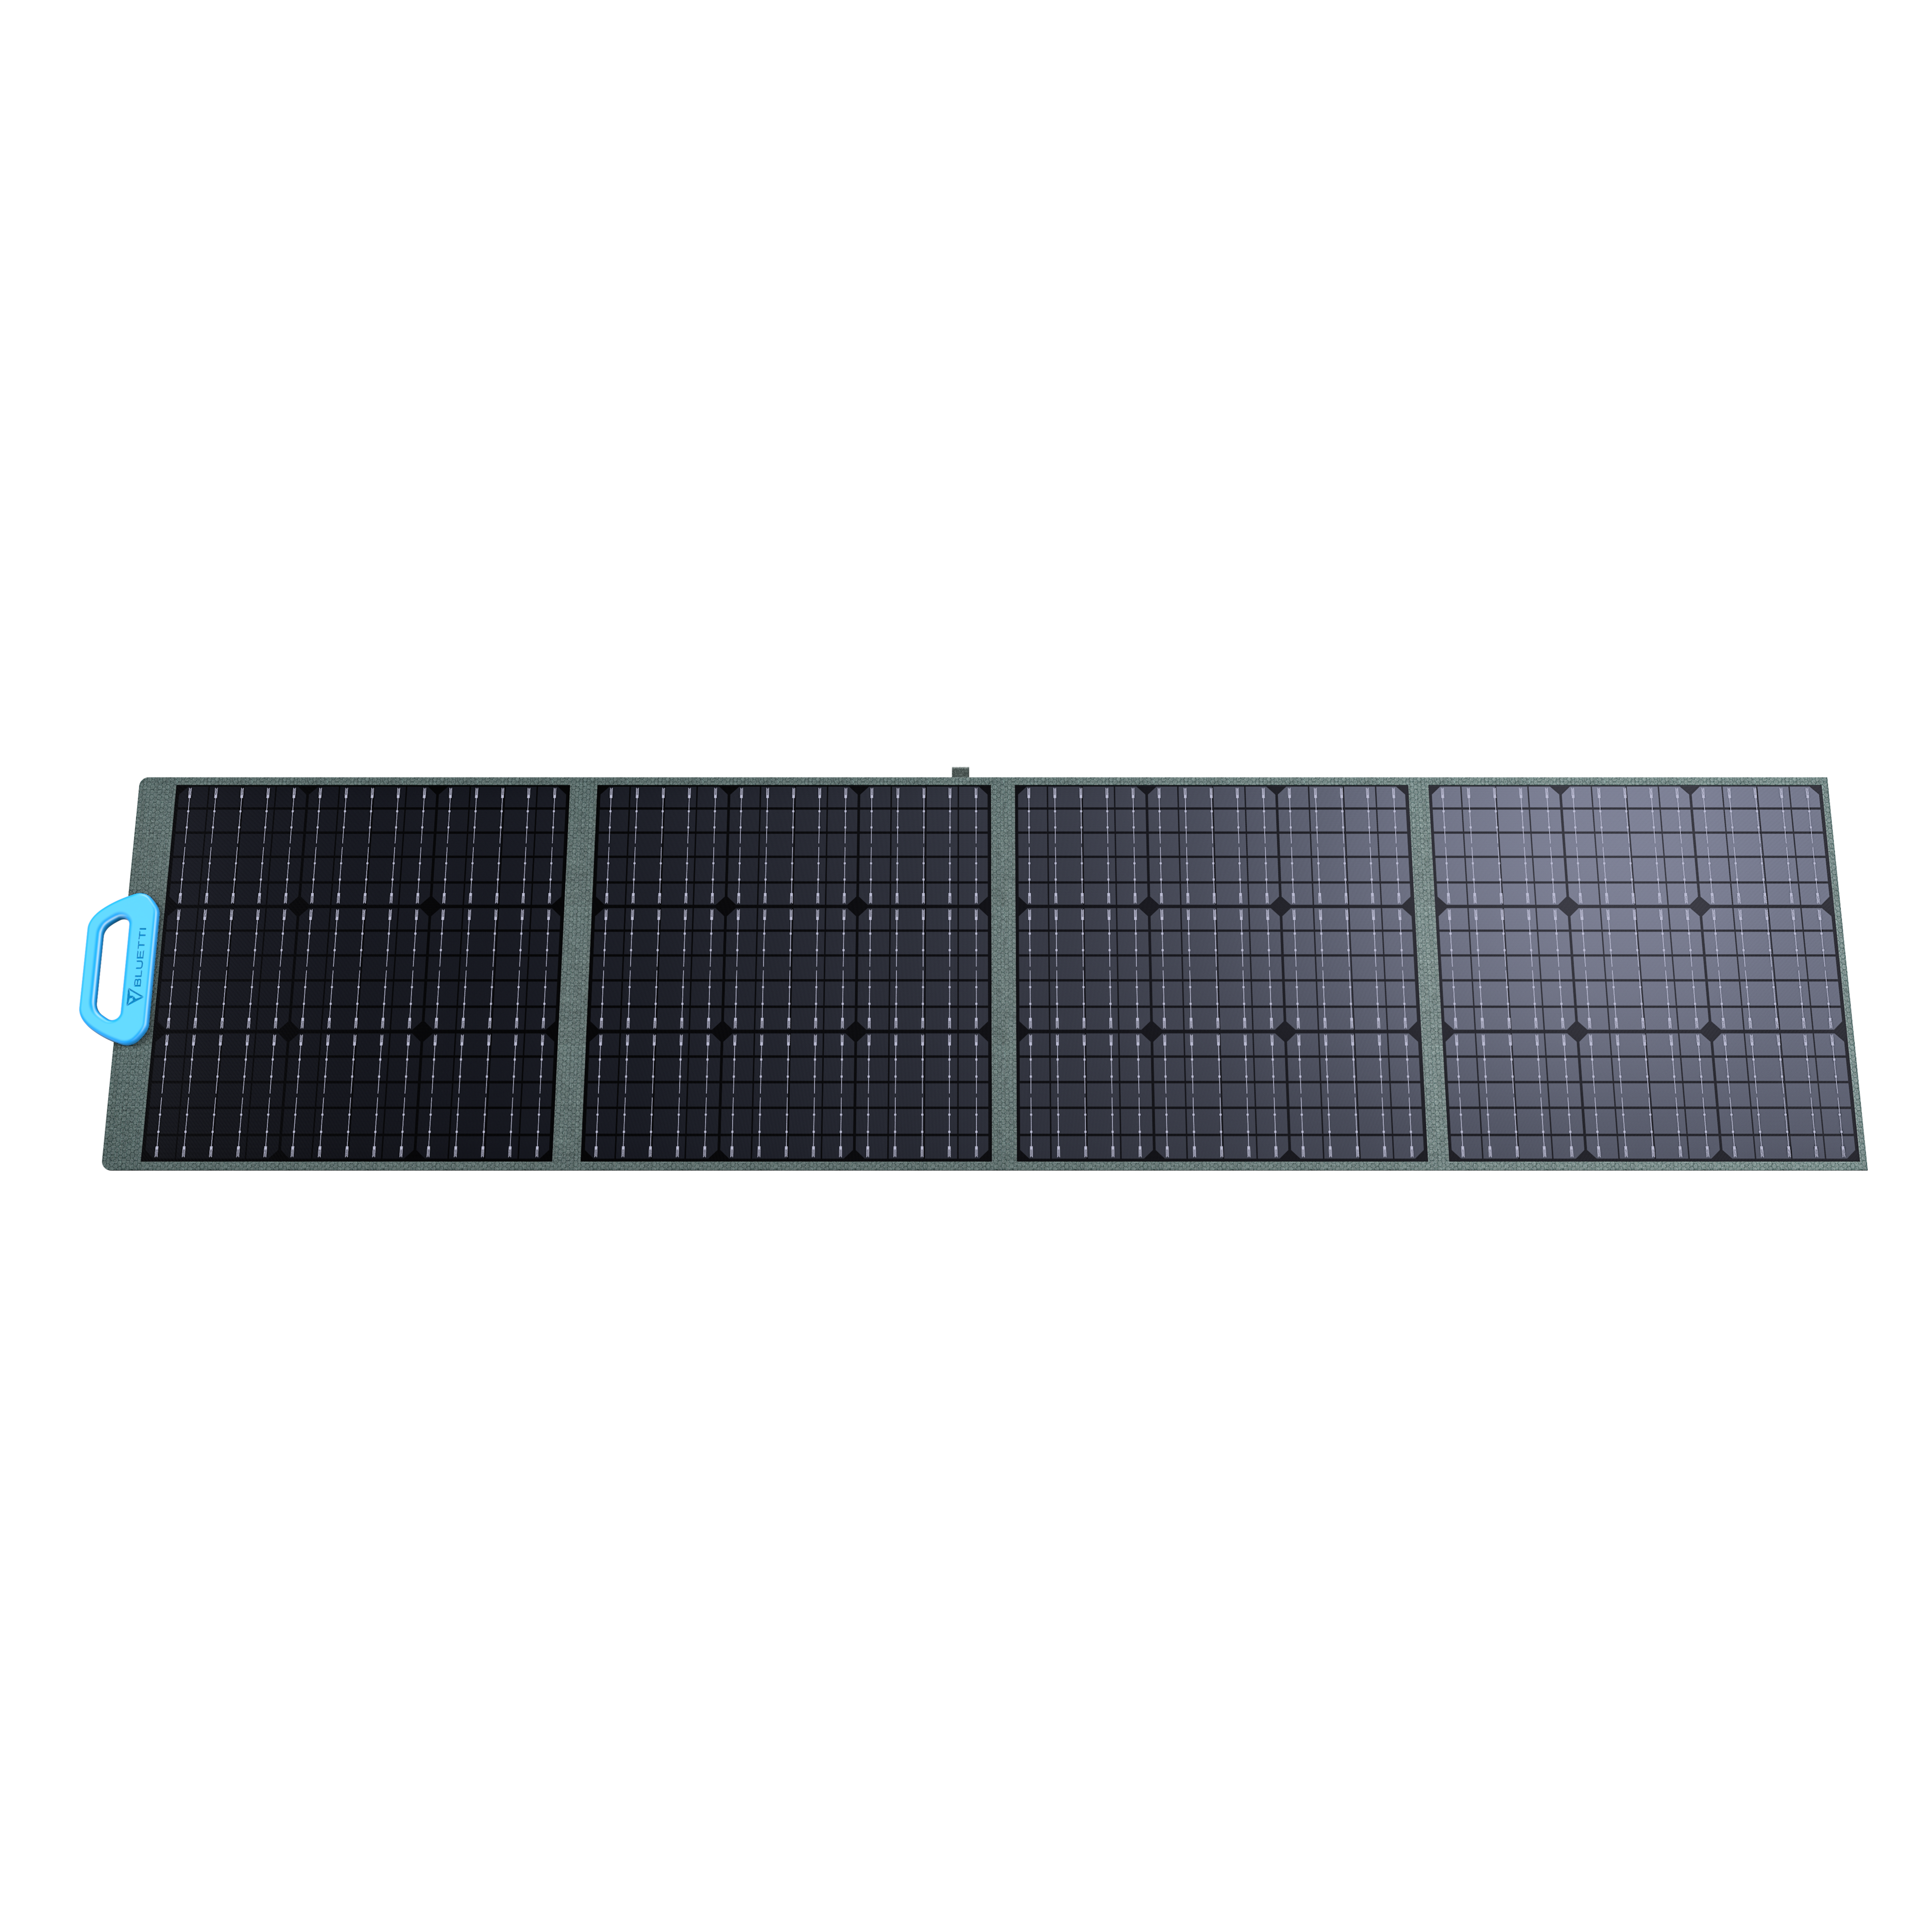 Tragbares Solarpanel Bluetti PV200 – leistungsstarke Solarenergie für Outdoor-Abenteuer